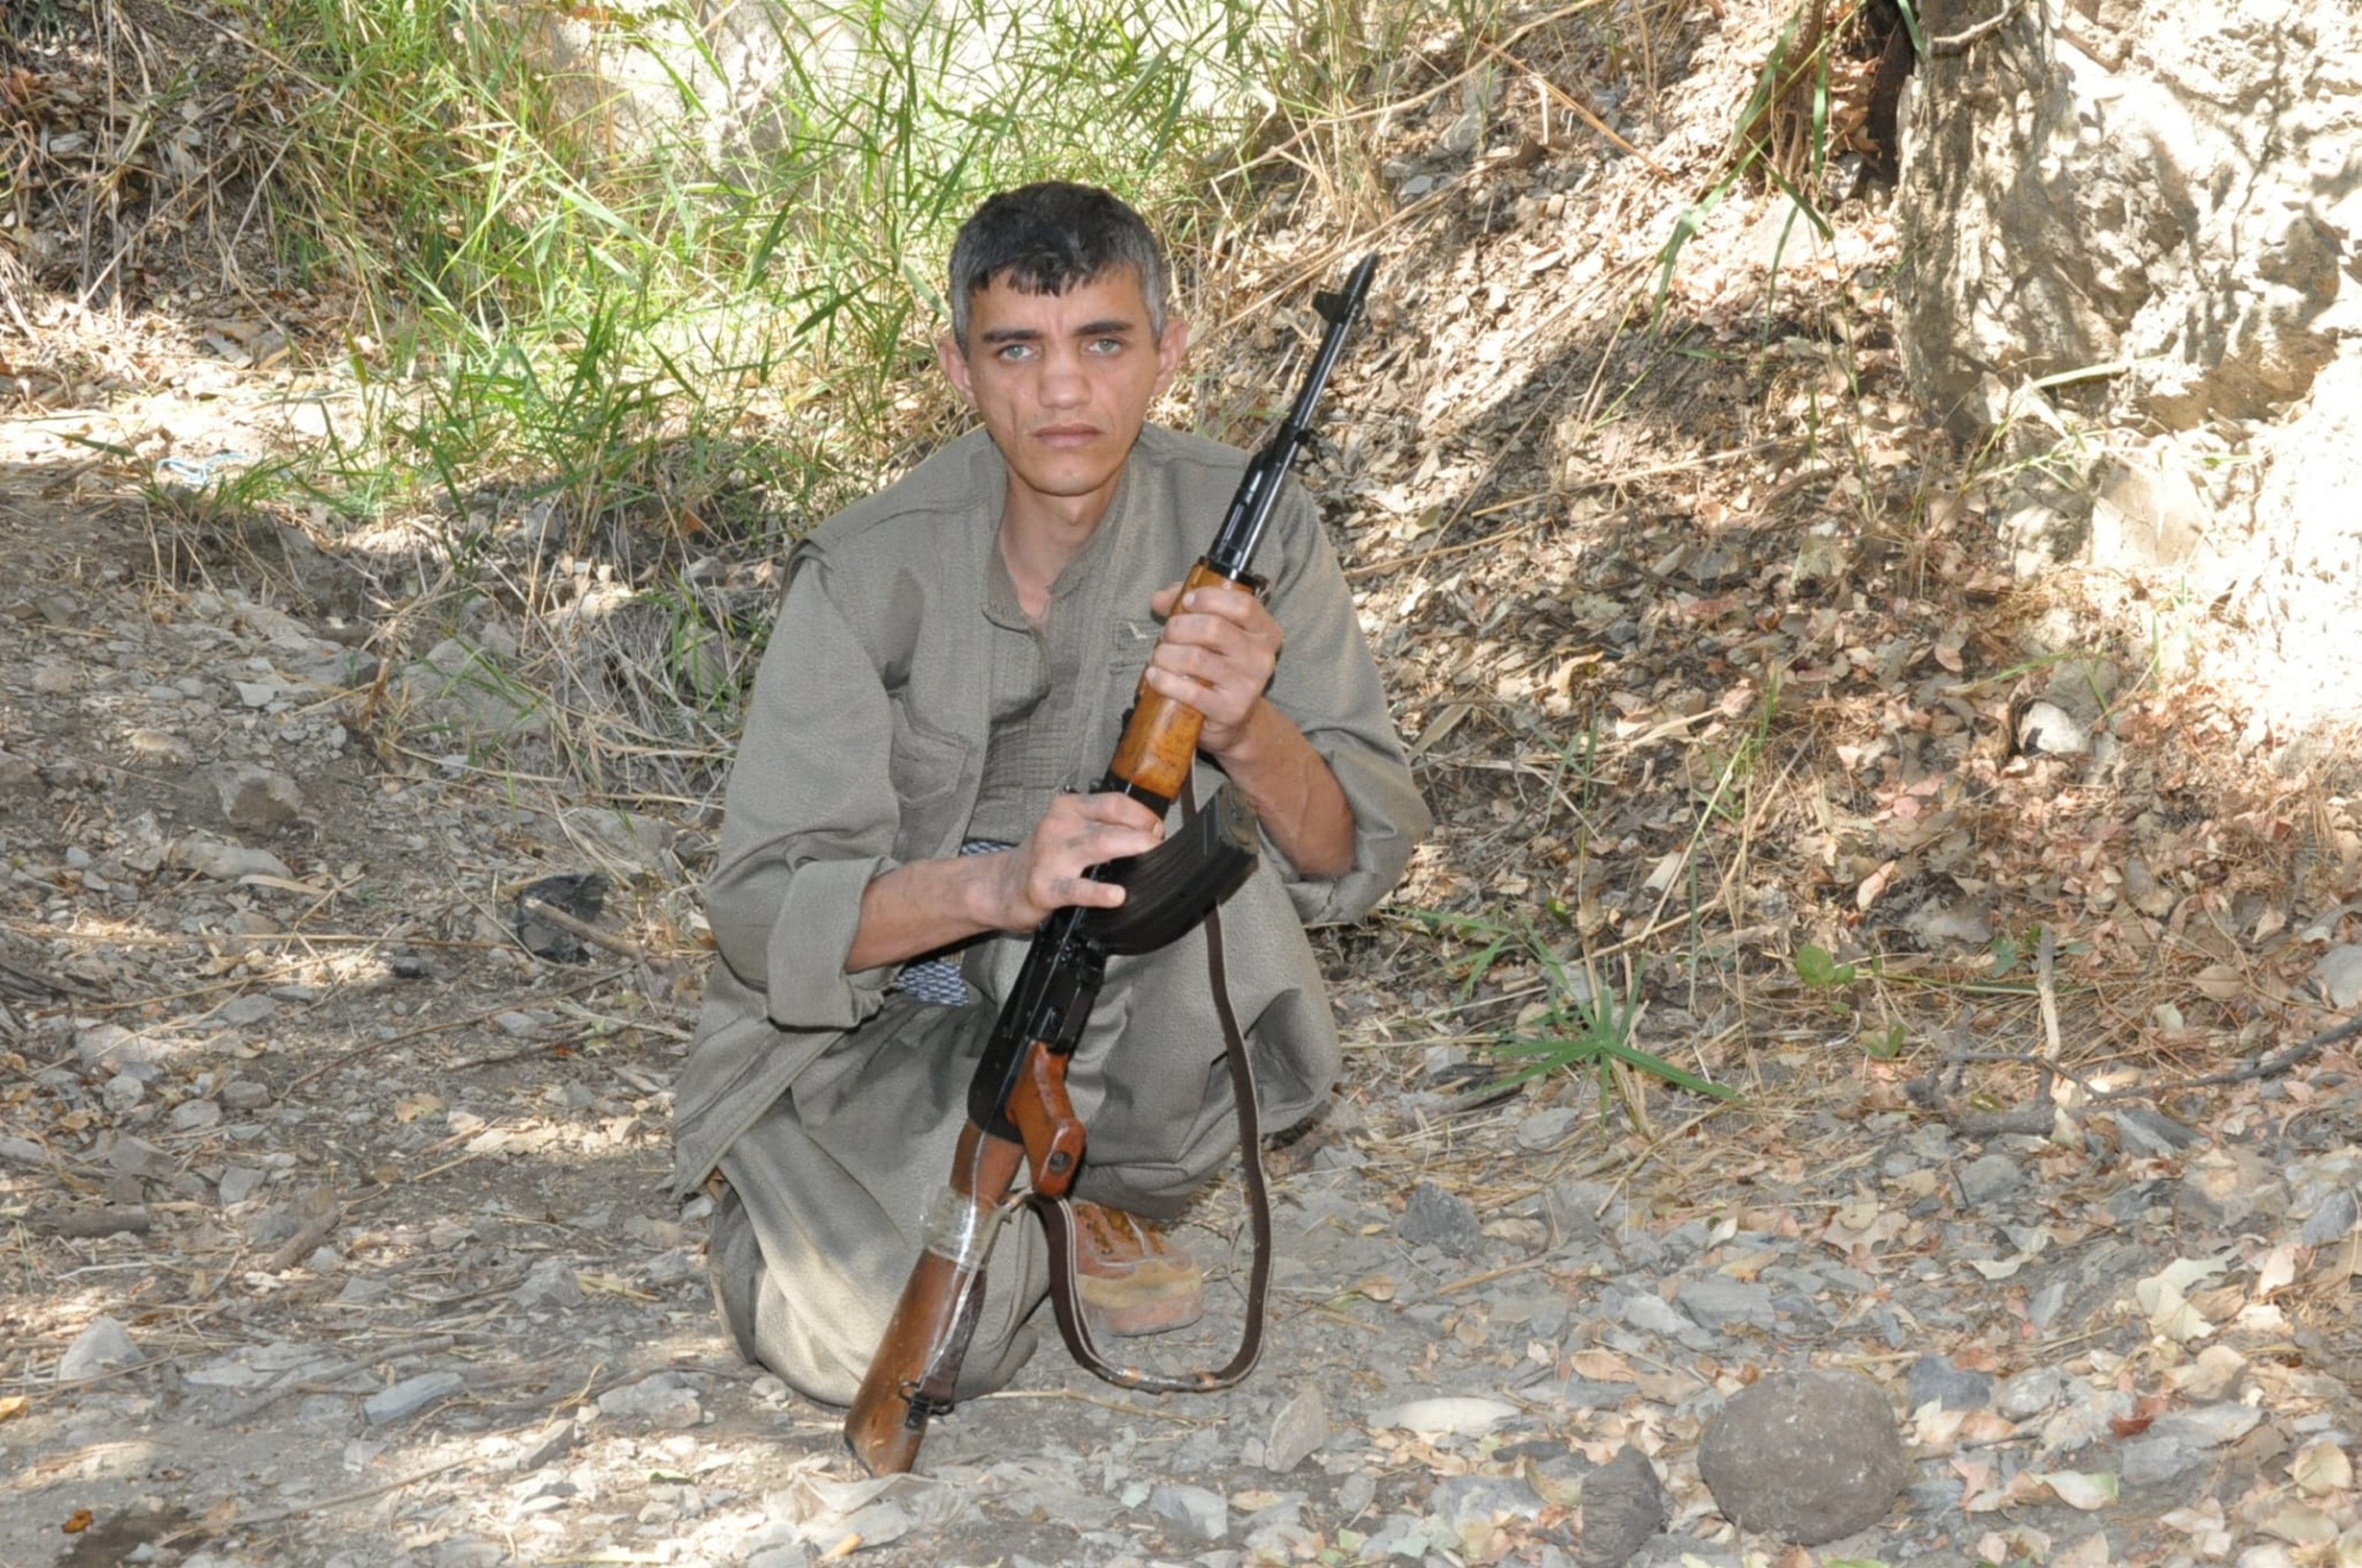 PKK terrorist Mehmet Akin, code-named 